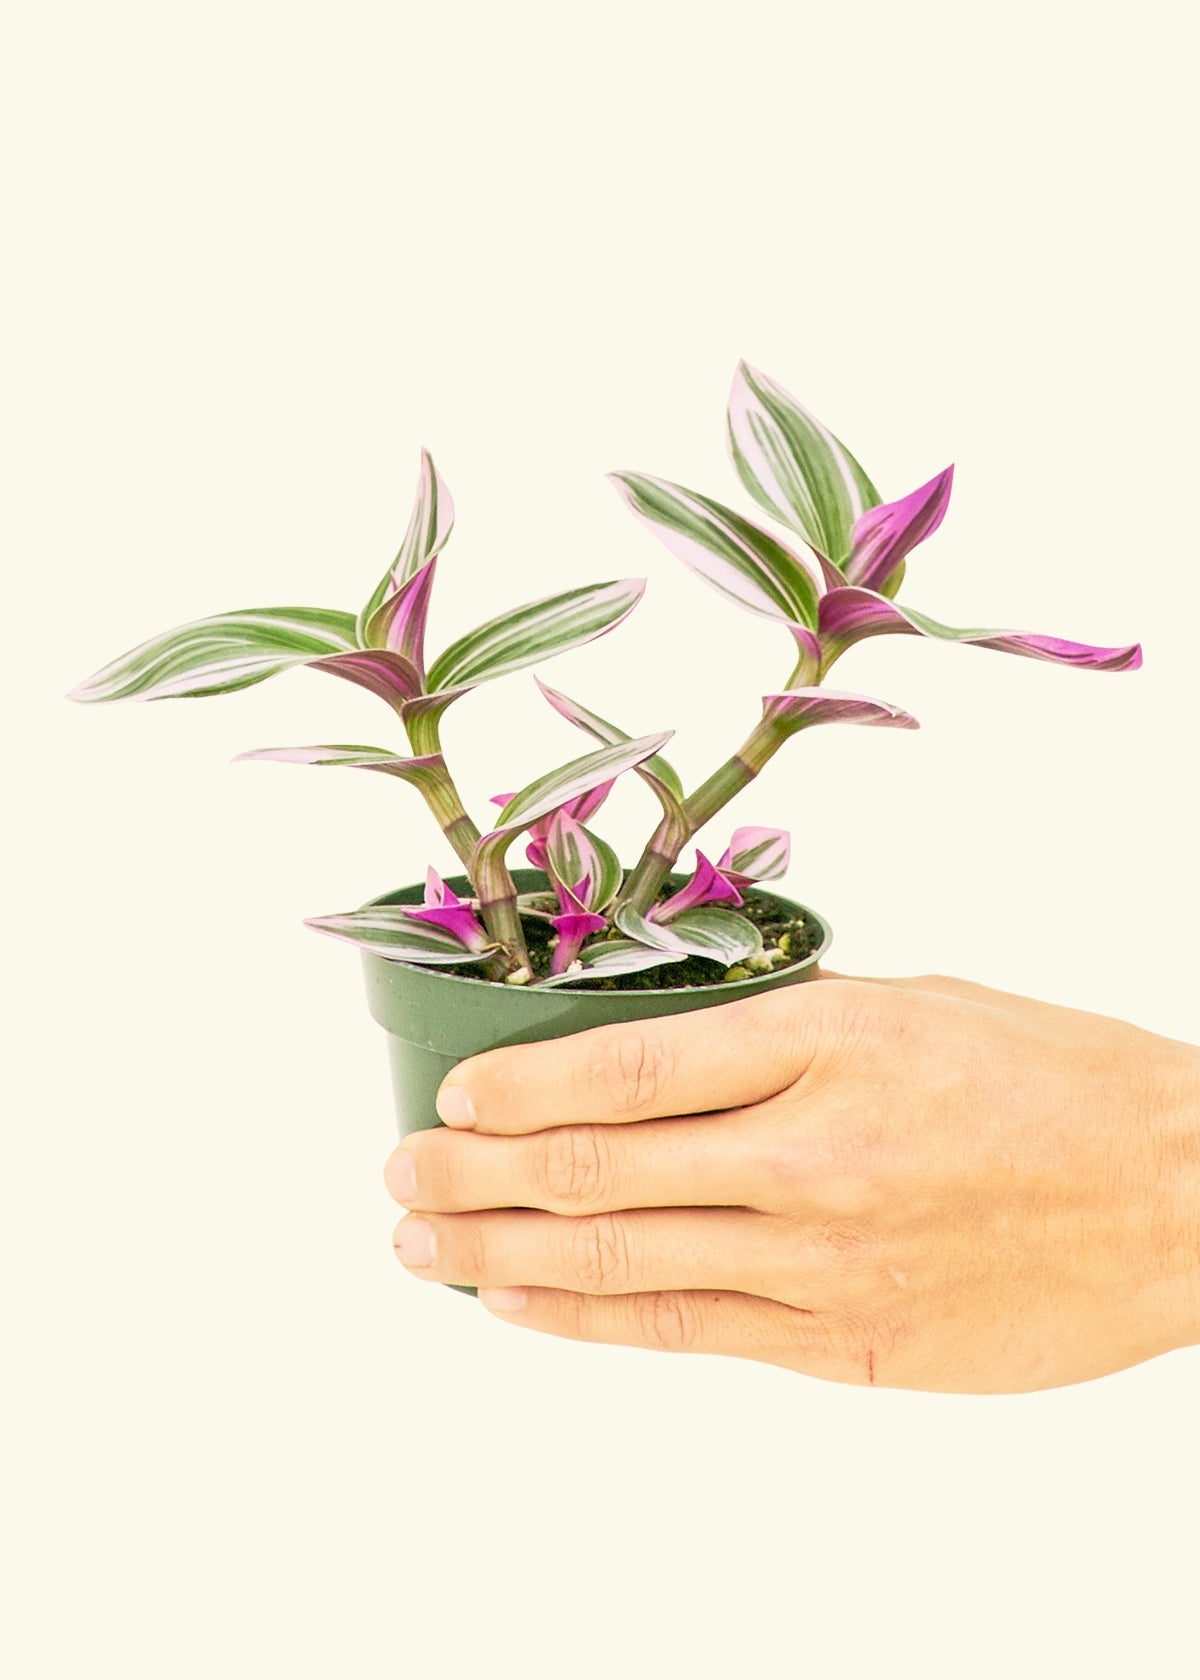 Small Tradescantia Nanouk (Tradescantia albiflora 'nanouk') in a grow pot.